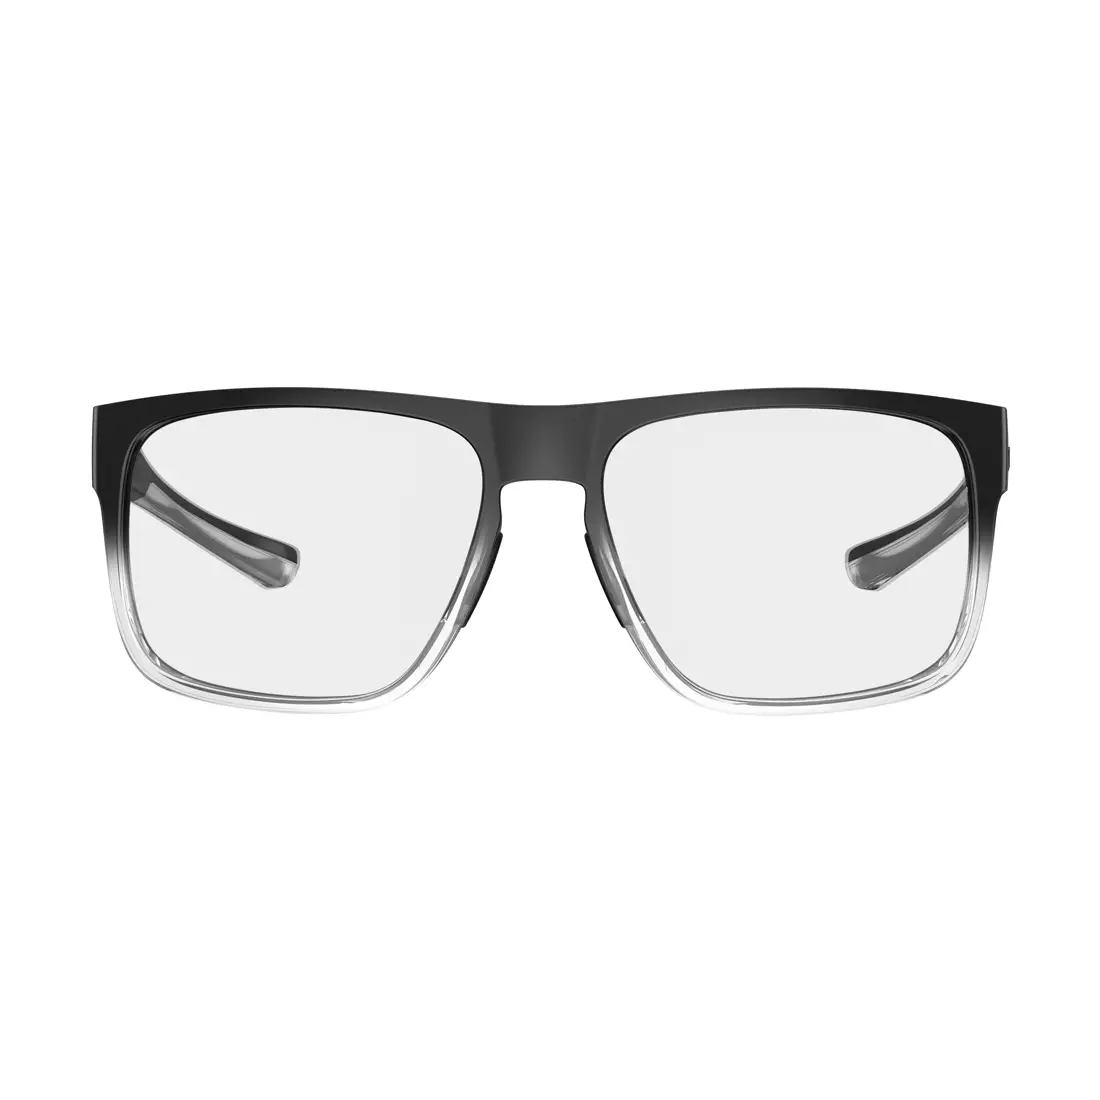 TIFOSI okulary sportowe swick onyx fade (Clear 95,6%) TFI-1520409573